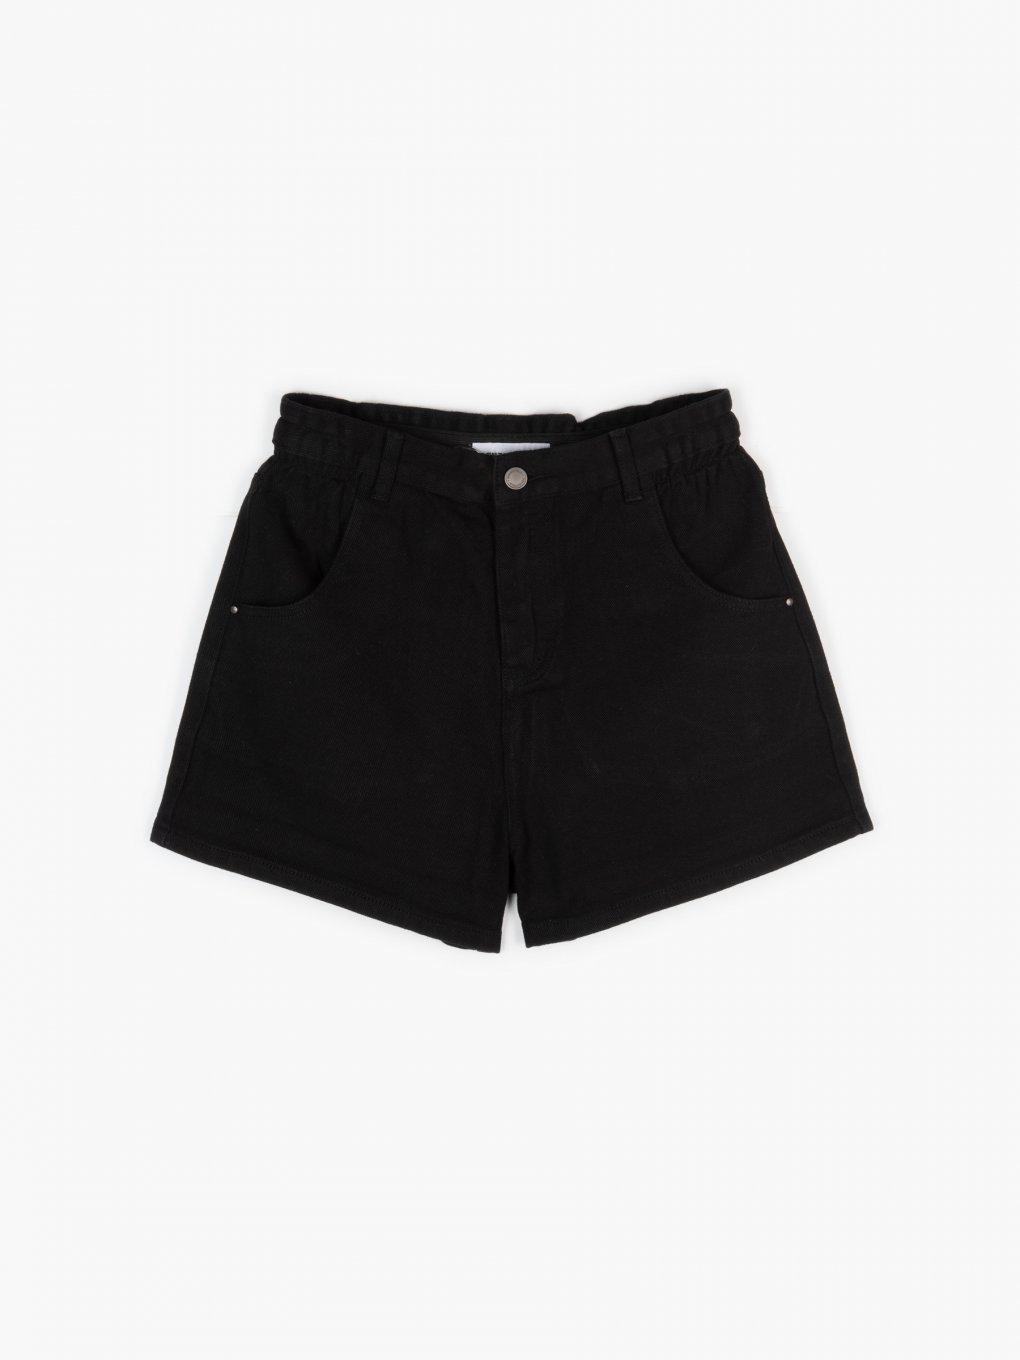 High-waisted denim shorts